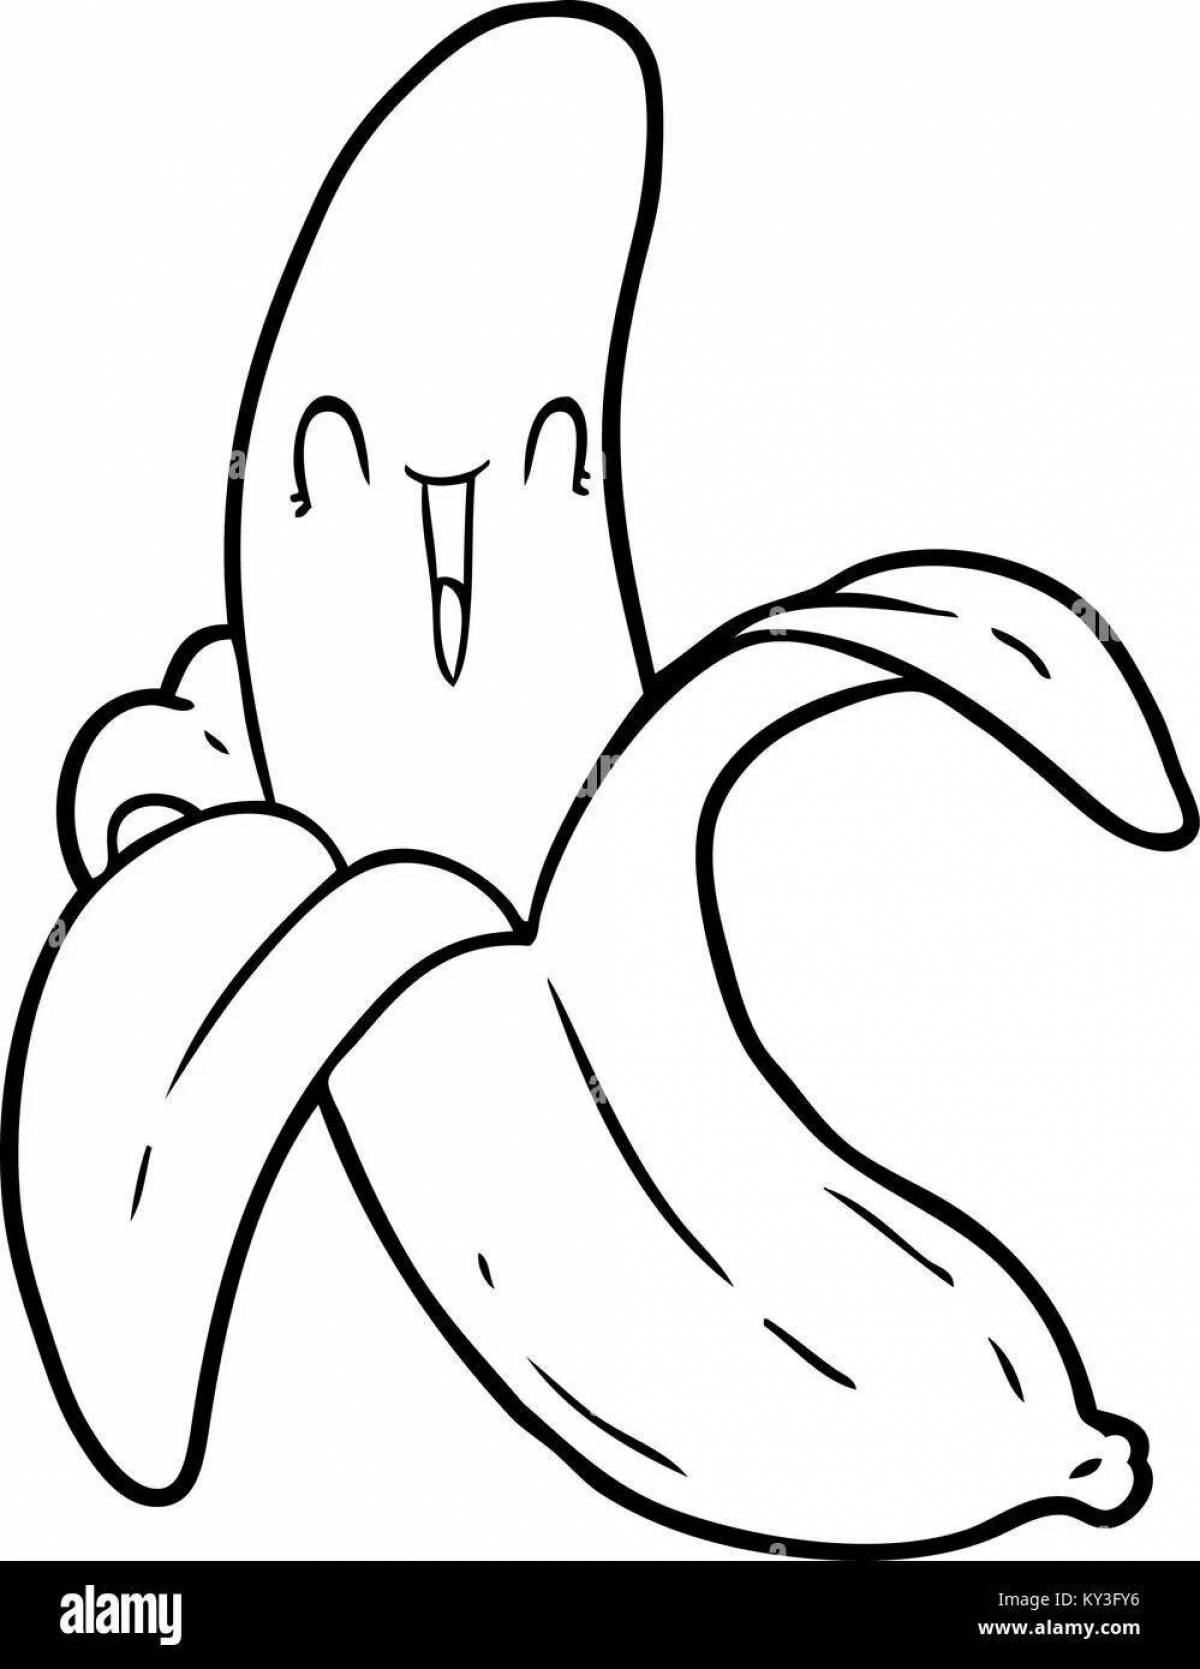 Озорной кот в банане